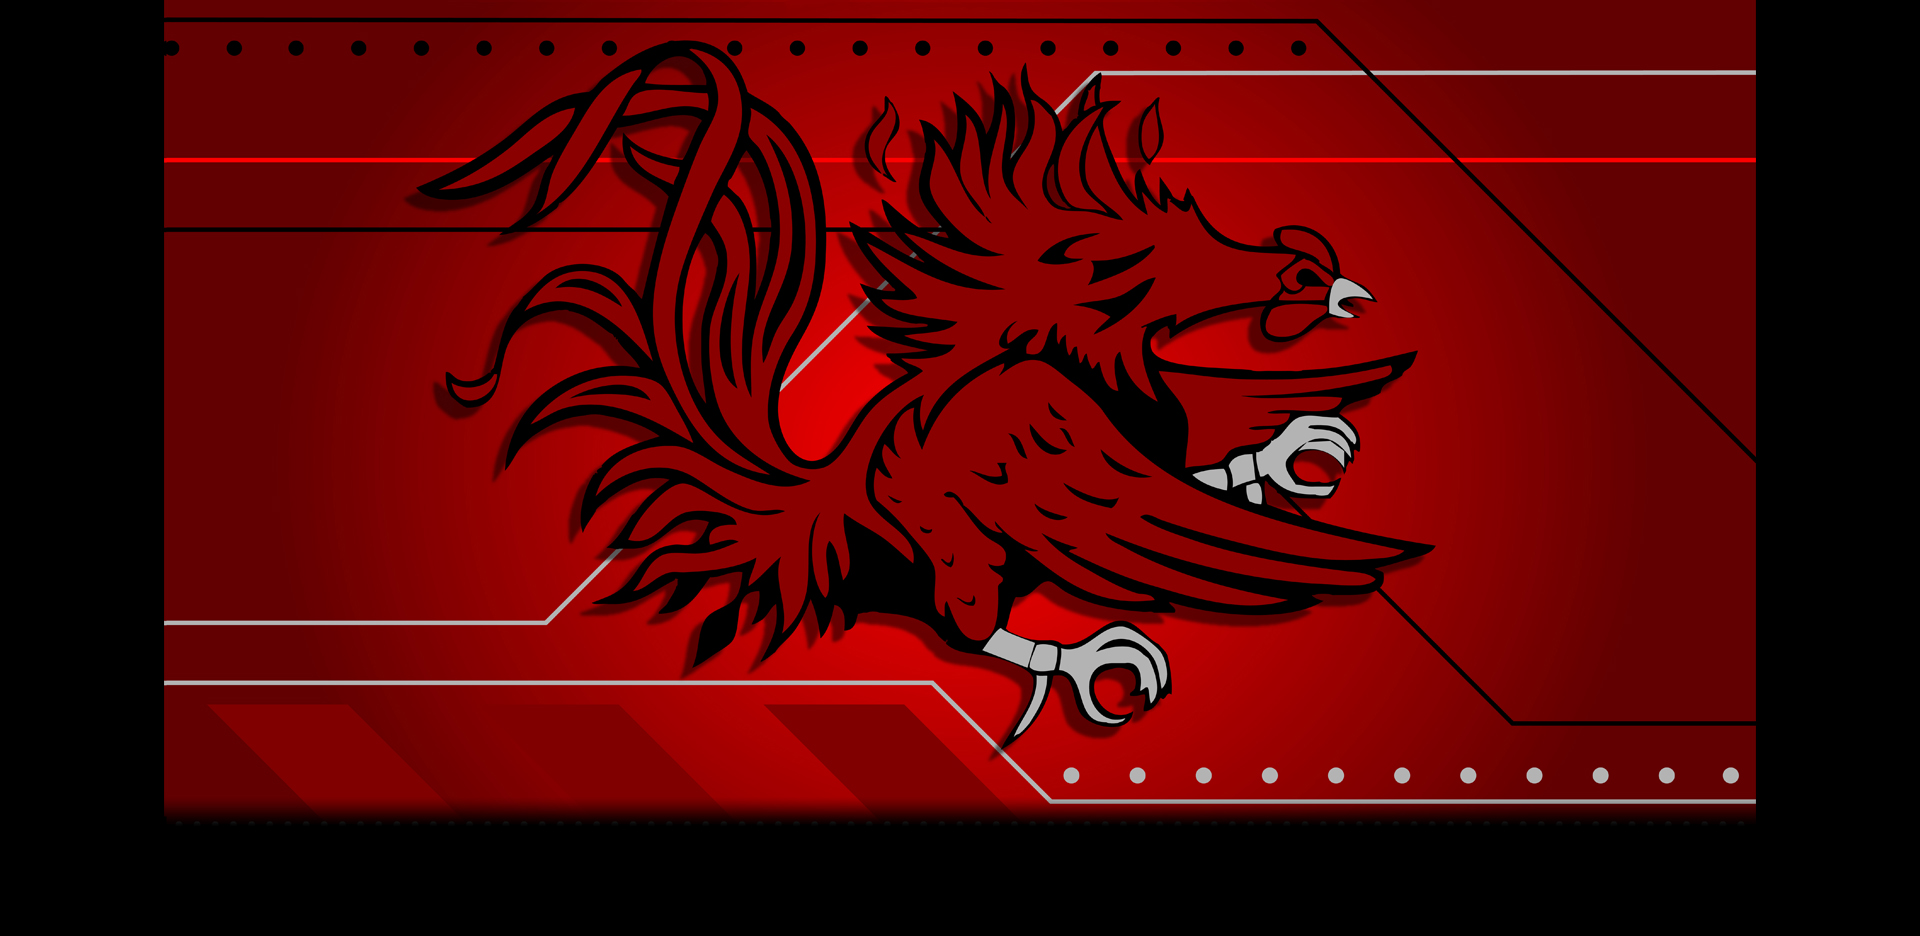 Displaying Image For Gamecocks Logo Wallpaper